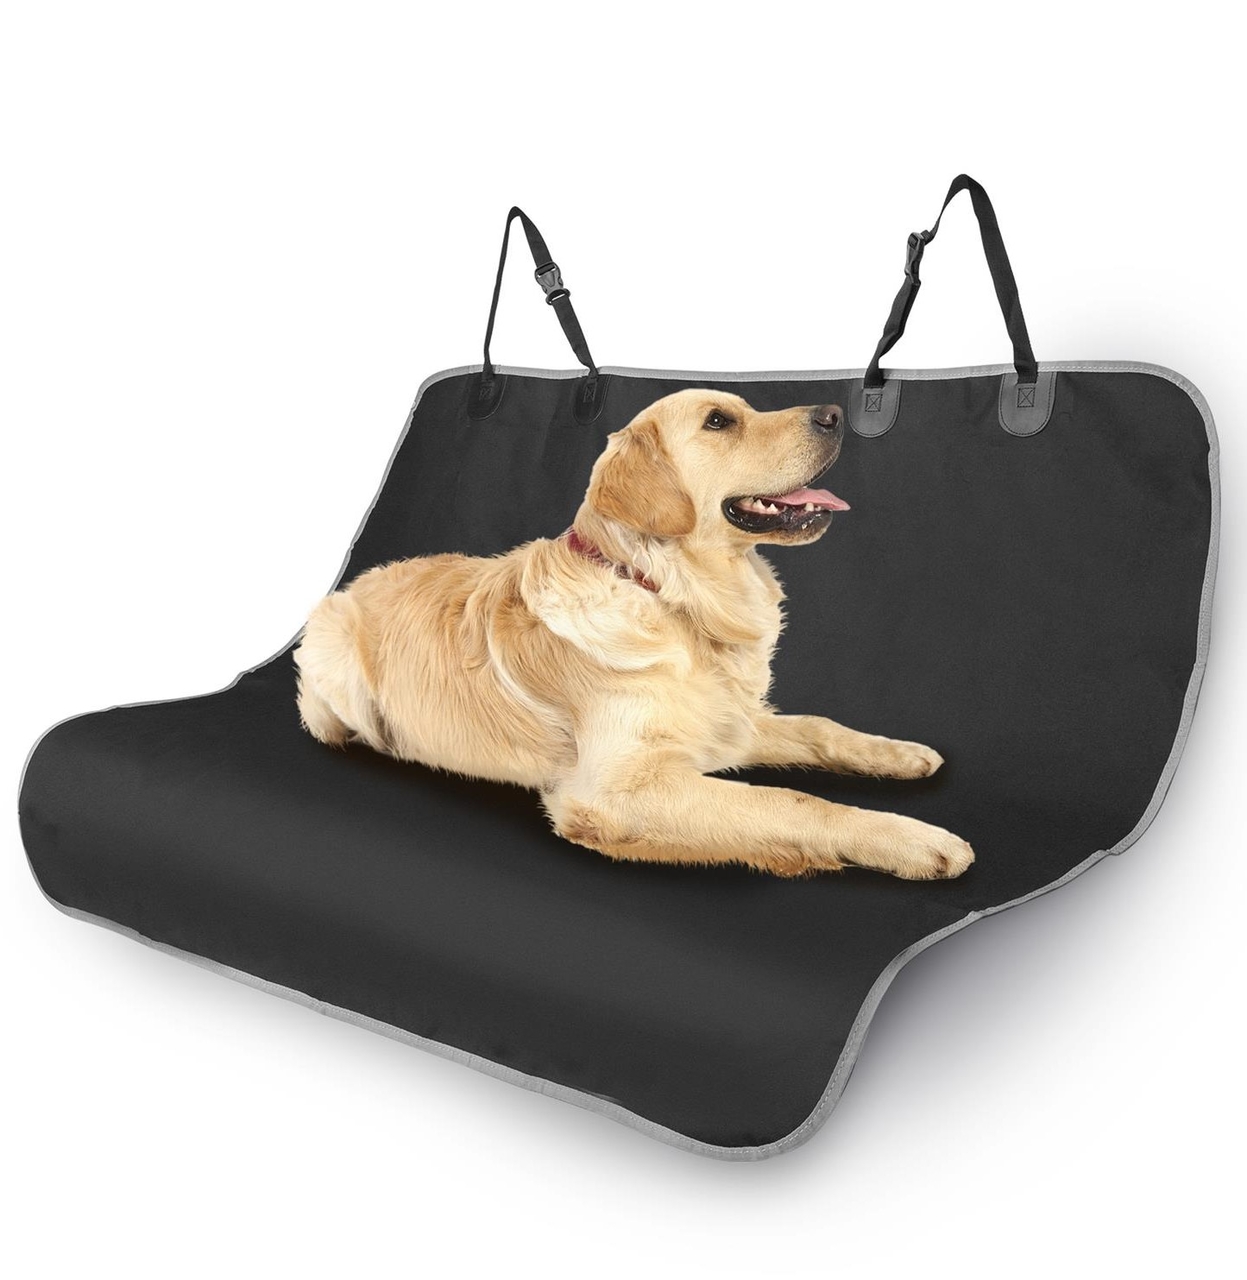 Nobleza hondendeken auto achterbank - beschermhoes auto hond - hondenkleed - kofferbak beschermhoes hond - autostoelhoes - 110 x140 cm - Zwart